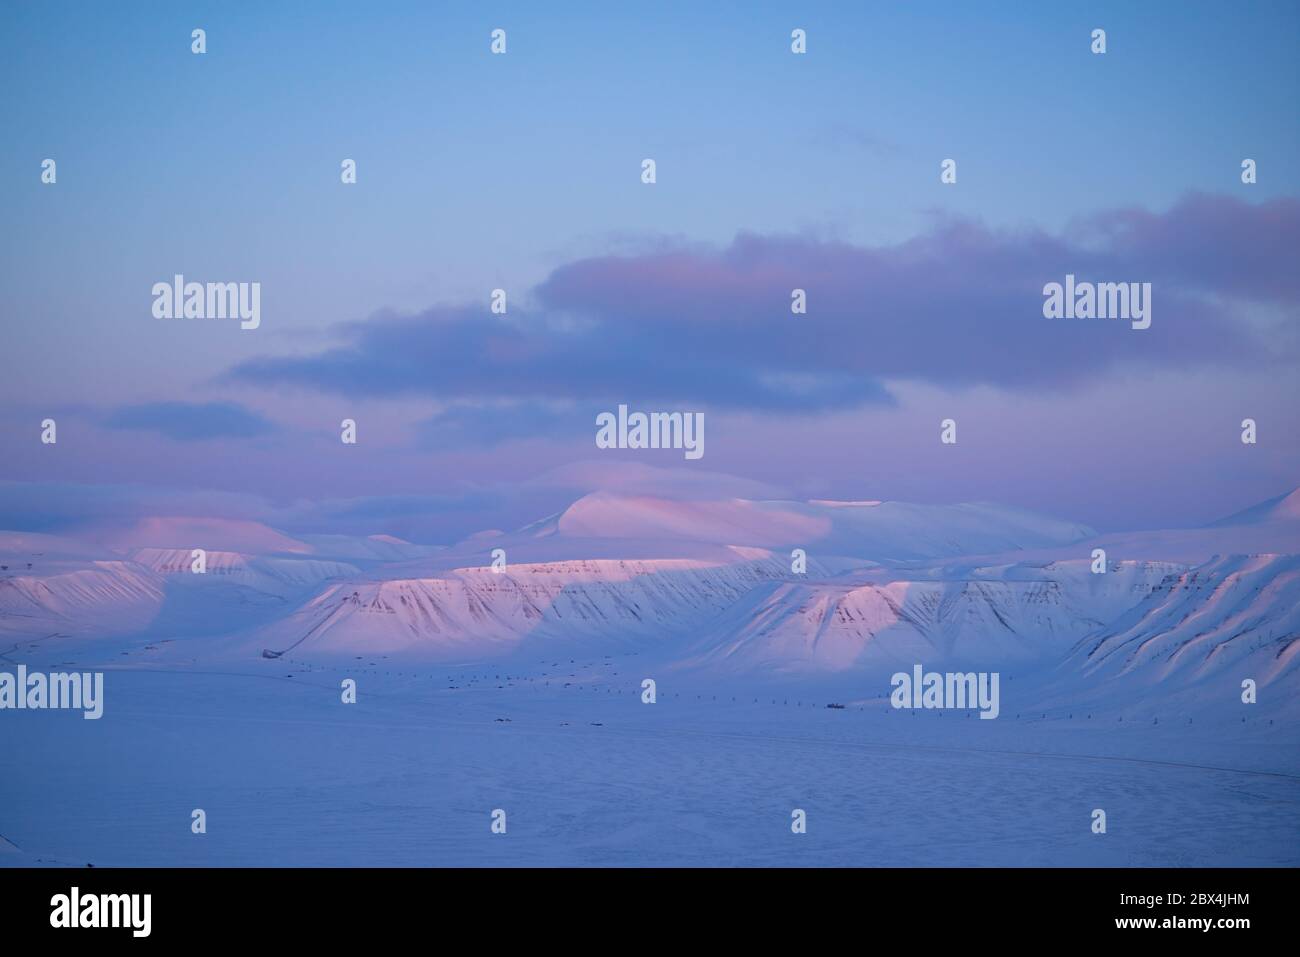 Paysage arctique avec montagnes enneigées et lumière rose sur le Spitzbergen Banque D'Images